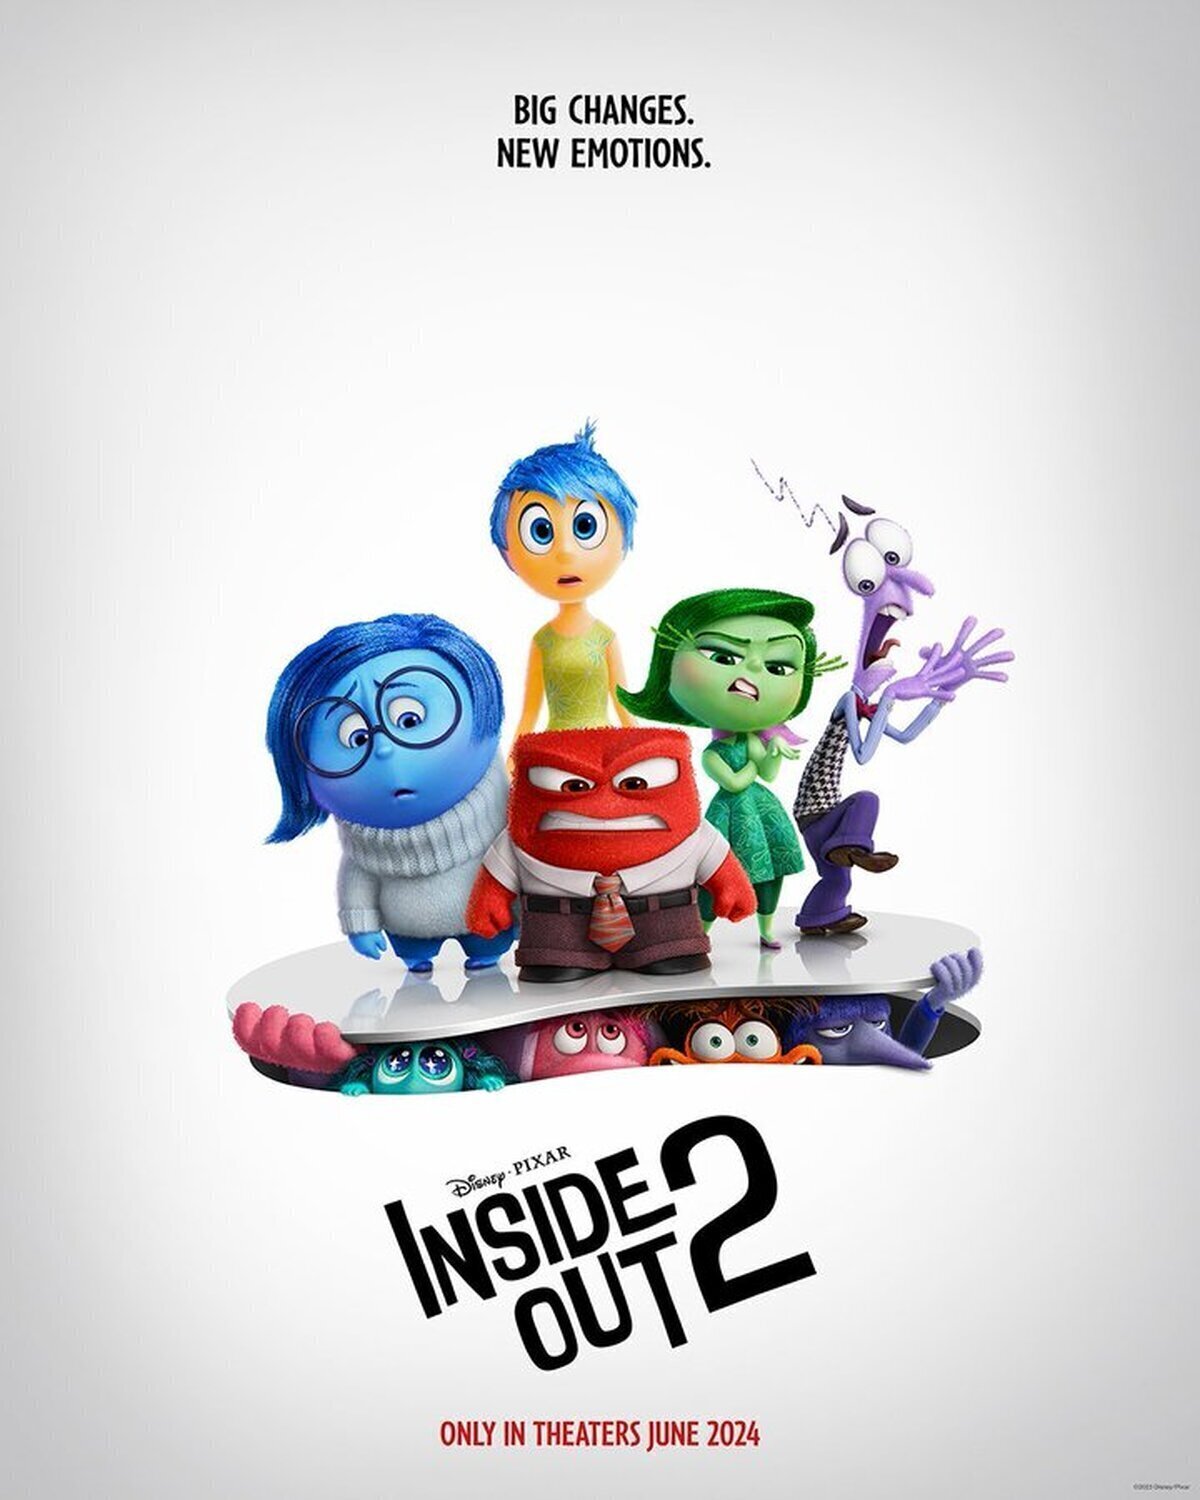 Han lanzado el poster de Inside Out 2 y ya aparecen las nuevas emociones de la peli, envidia, aburrimiento, vergüenza y ansiedad